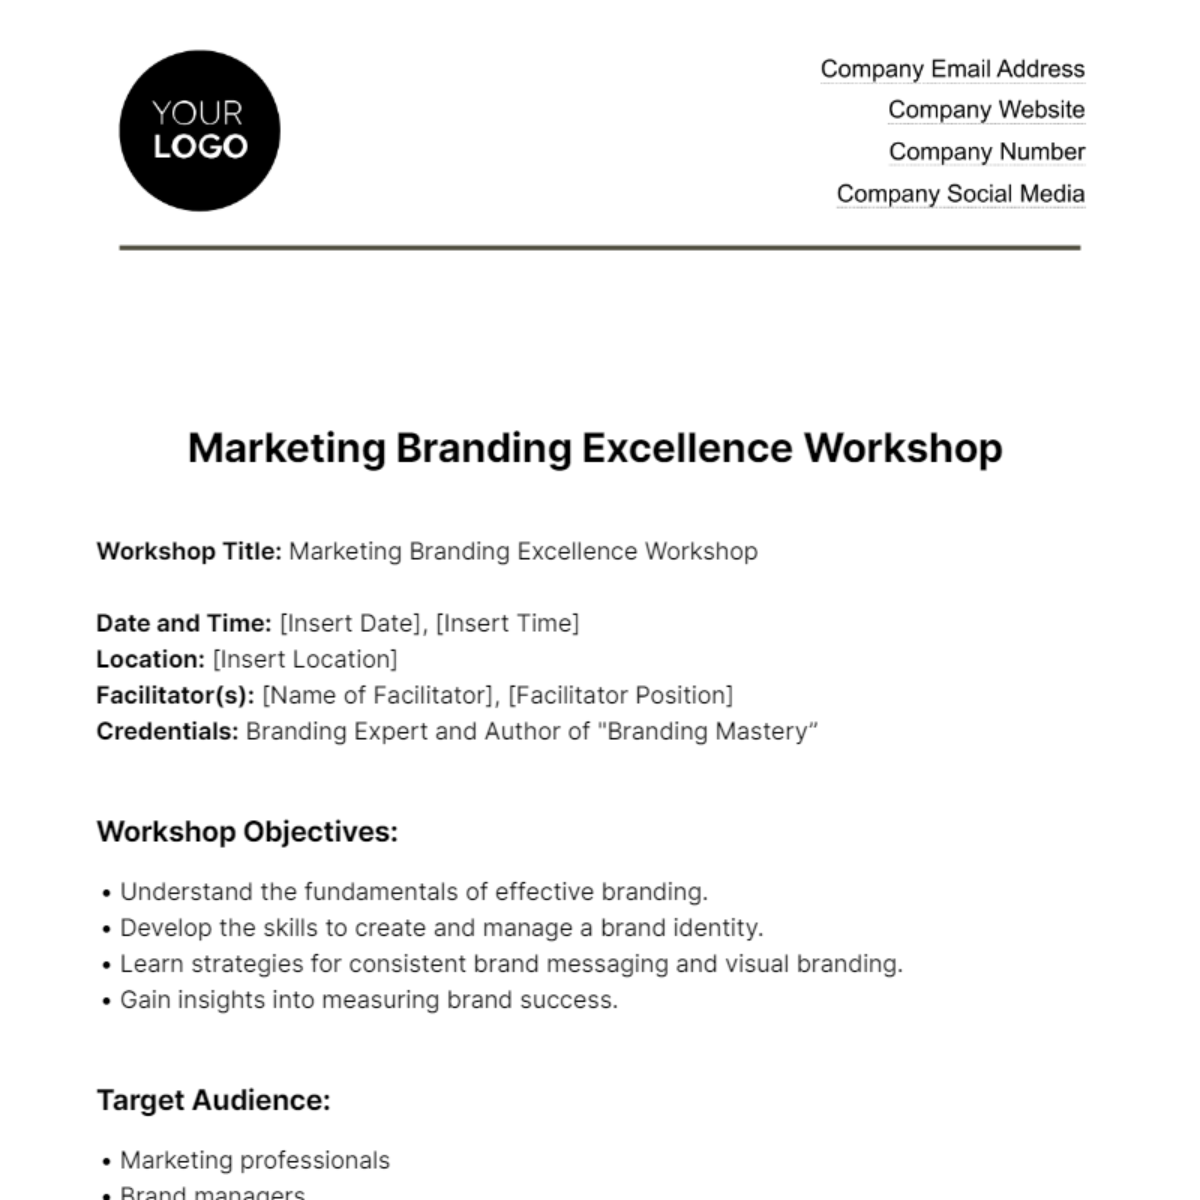 Marketing Branding Workshop Outline Template